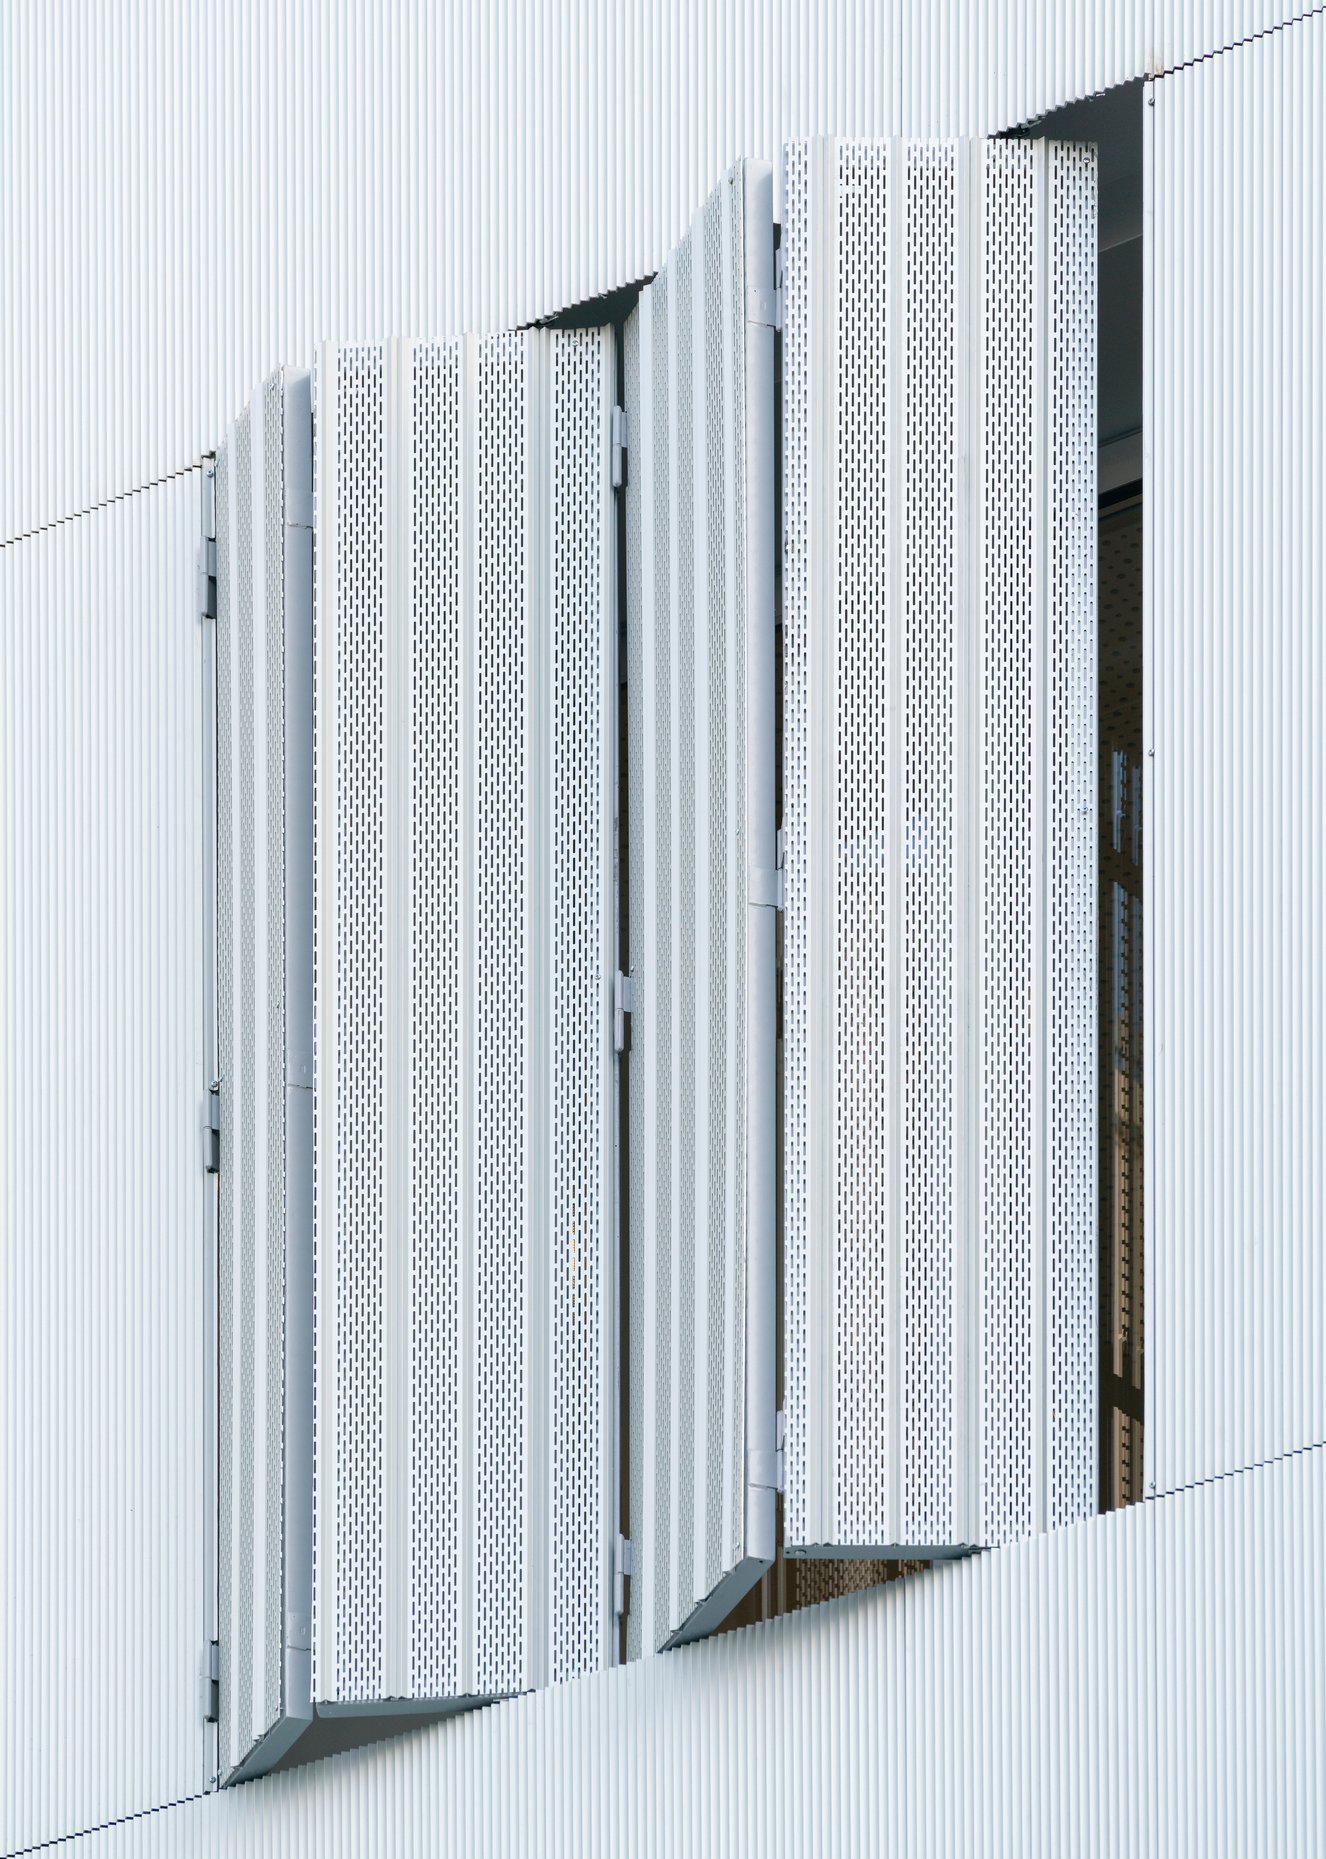 Rehabilitación de fachada ventilada con aluminio para la arquitectura